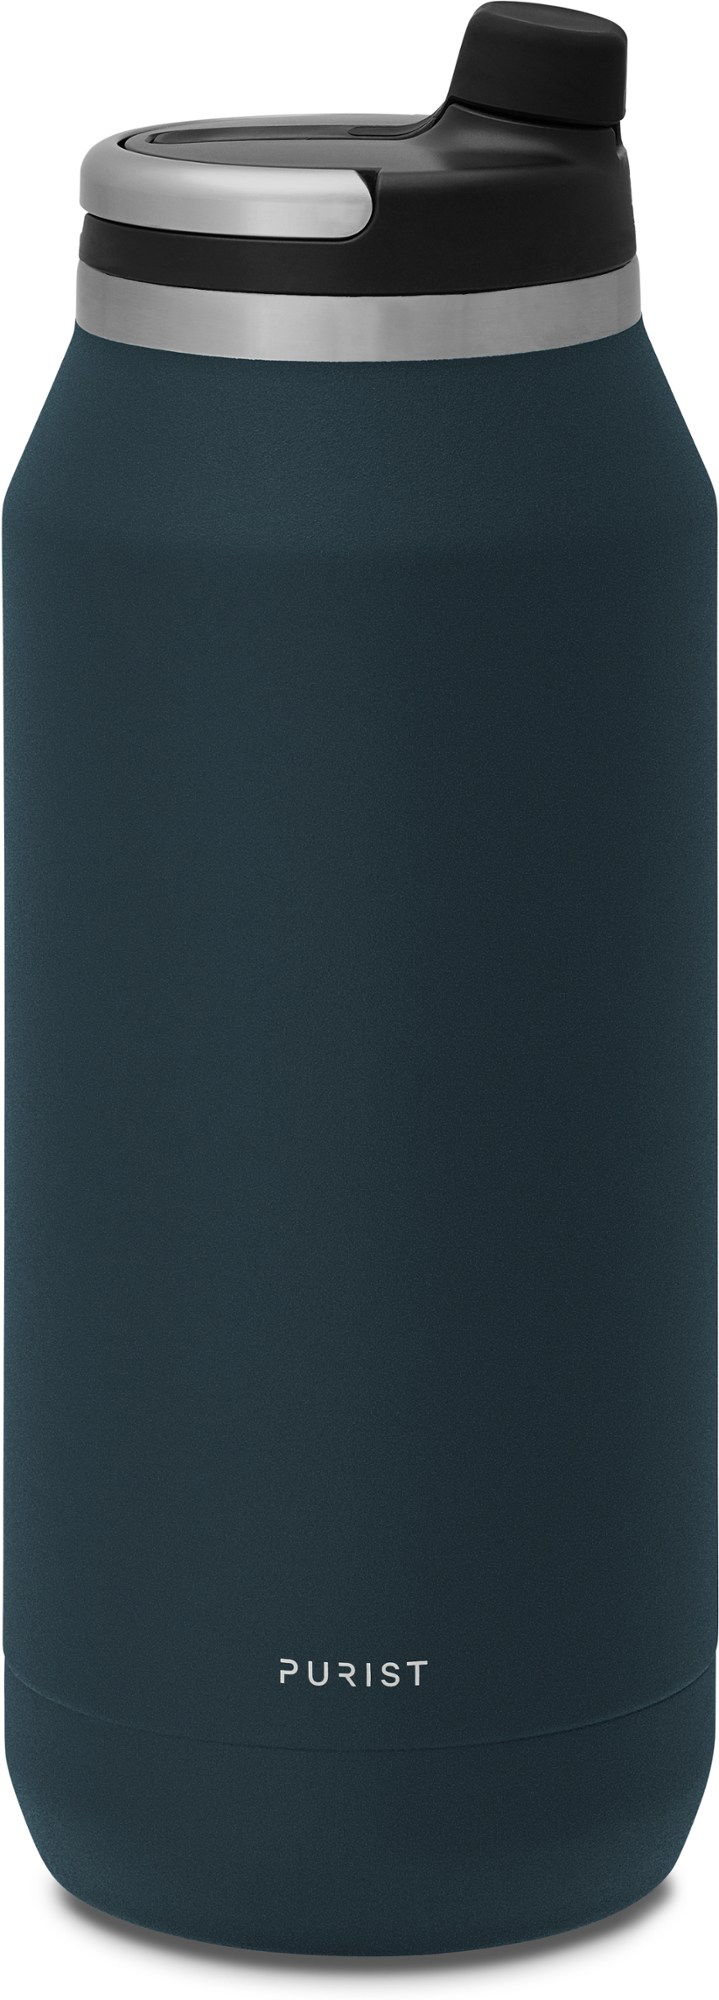 Вакуумная бутылка для воды Founder с крышкой Union Top - 32 эт. унция Purist, синий